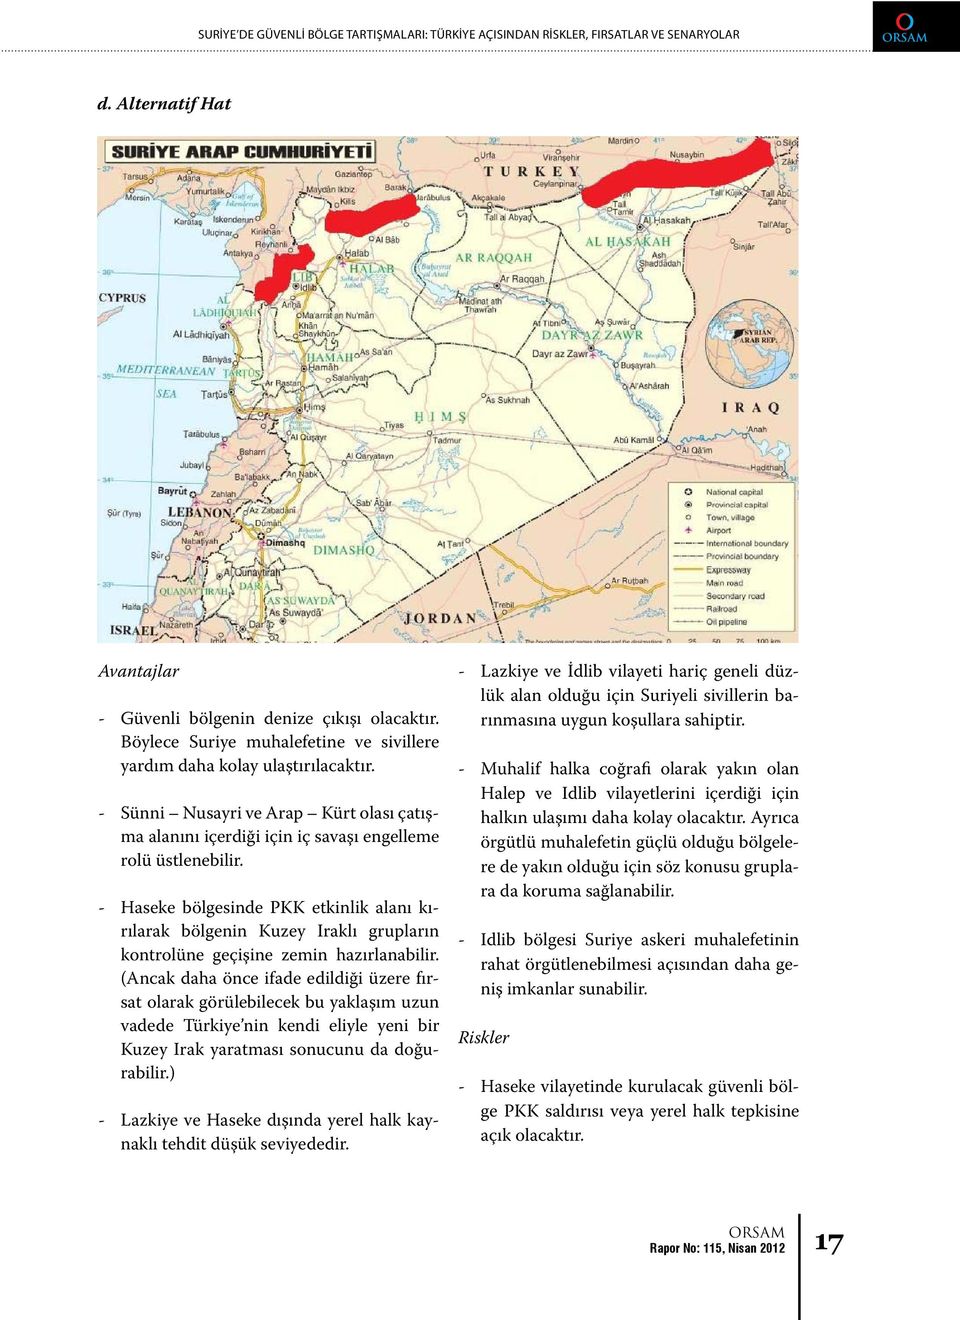 - Haseke bölgesinde PKK etkinlik alanı kırılarak bölgenin Kuzey Iraklı grupların kontrolüne geçişine zemin hazırlanabilir.